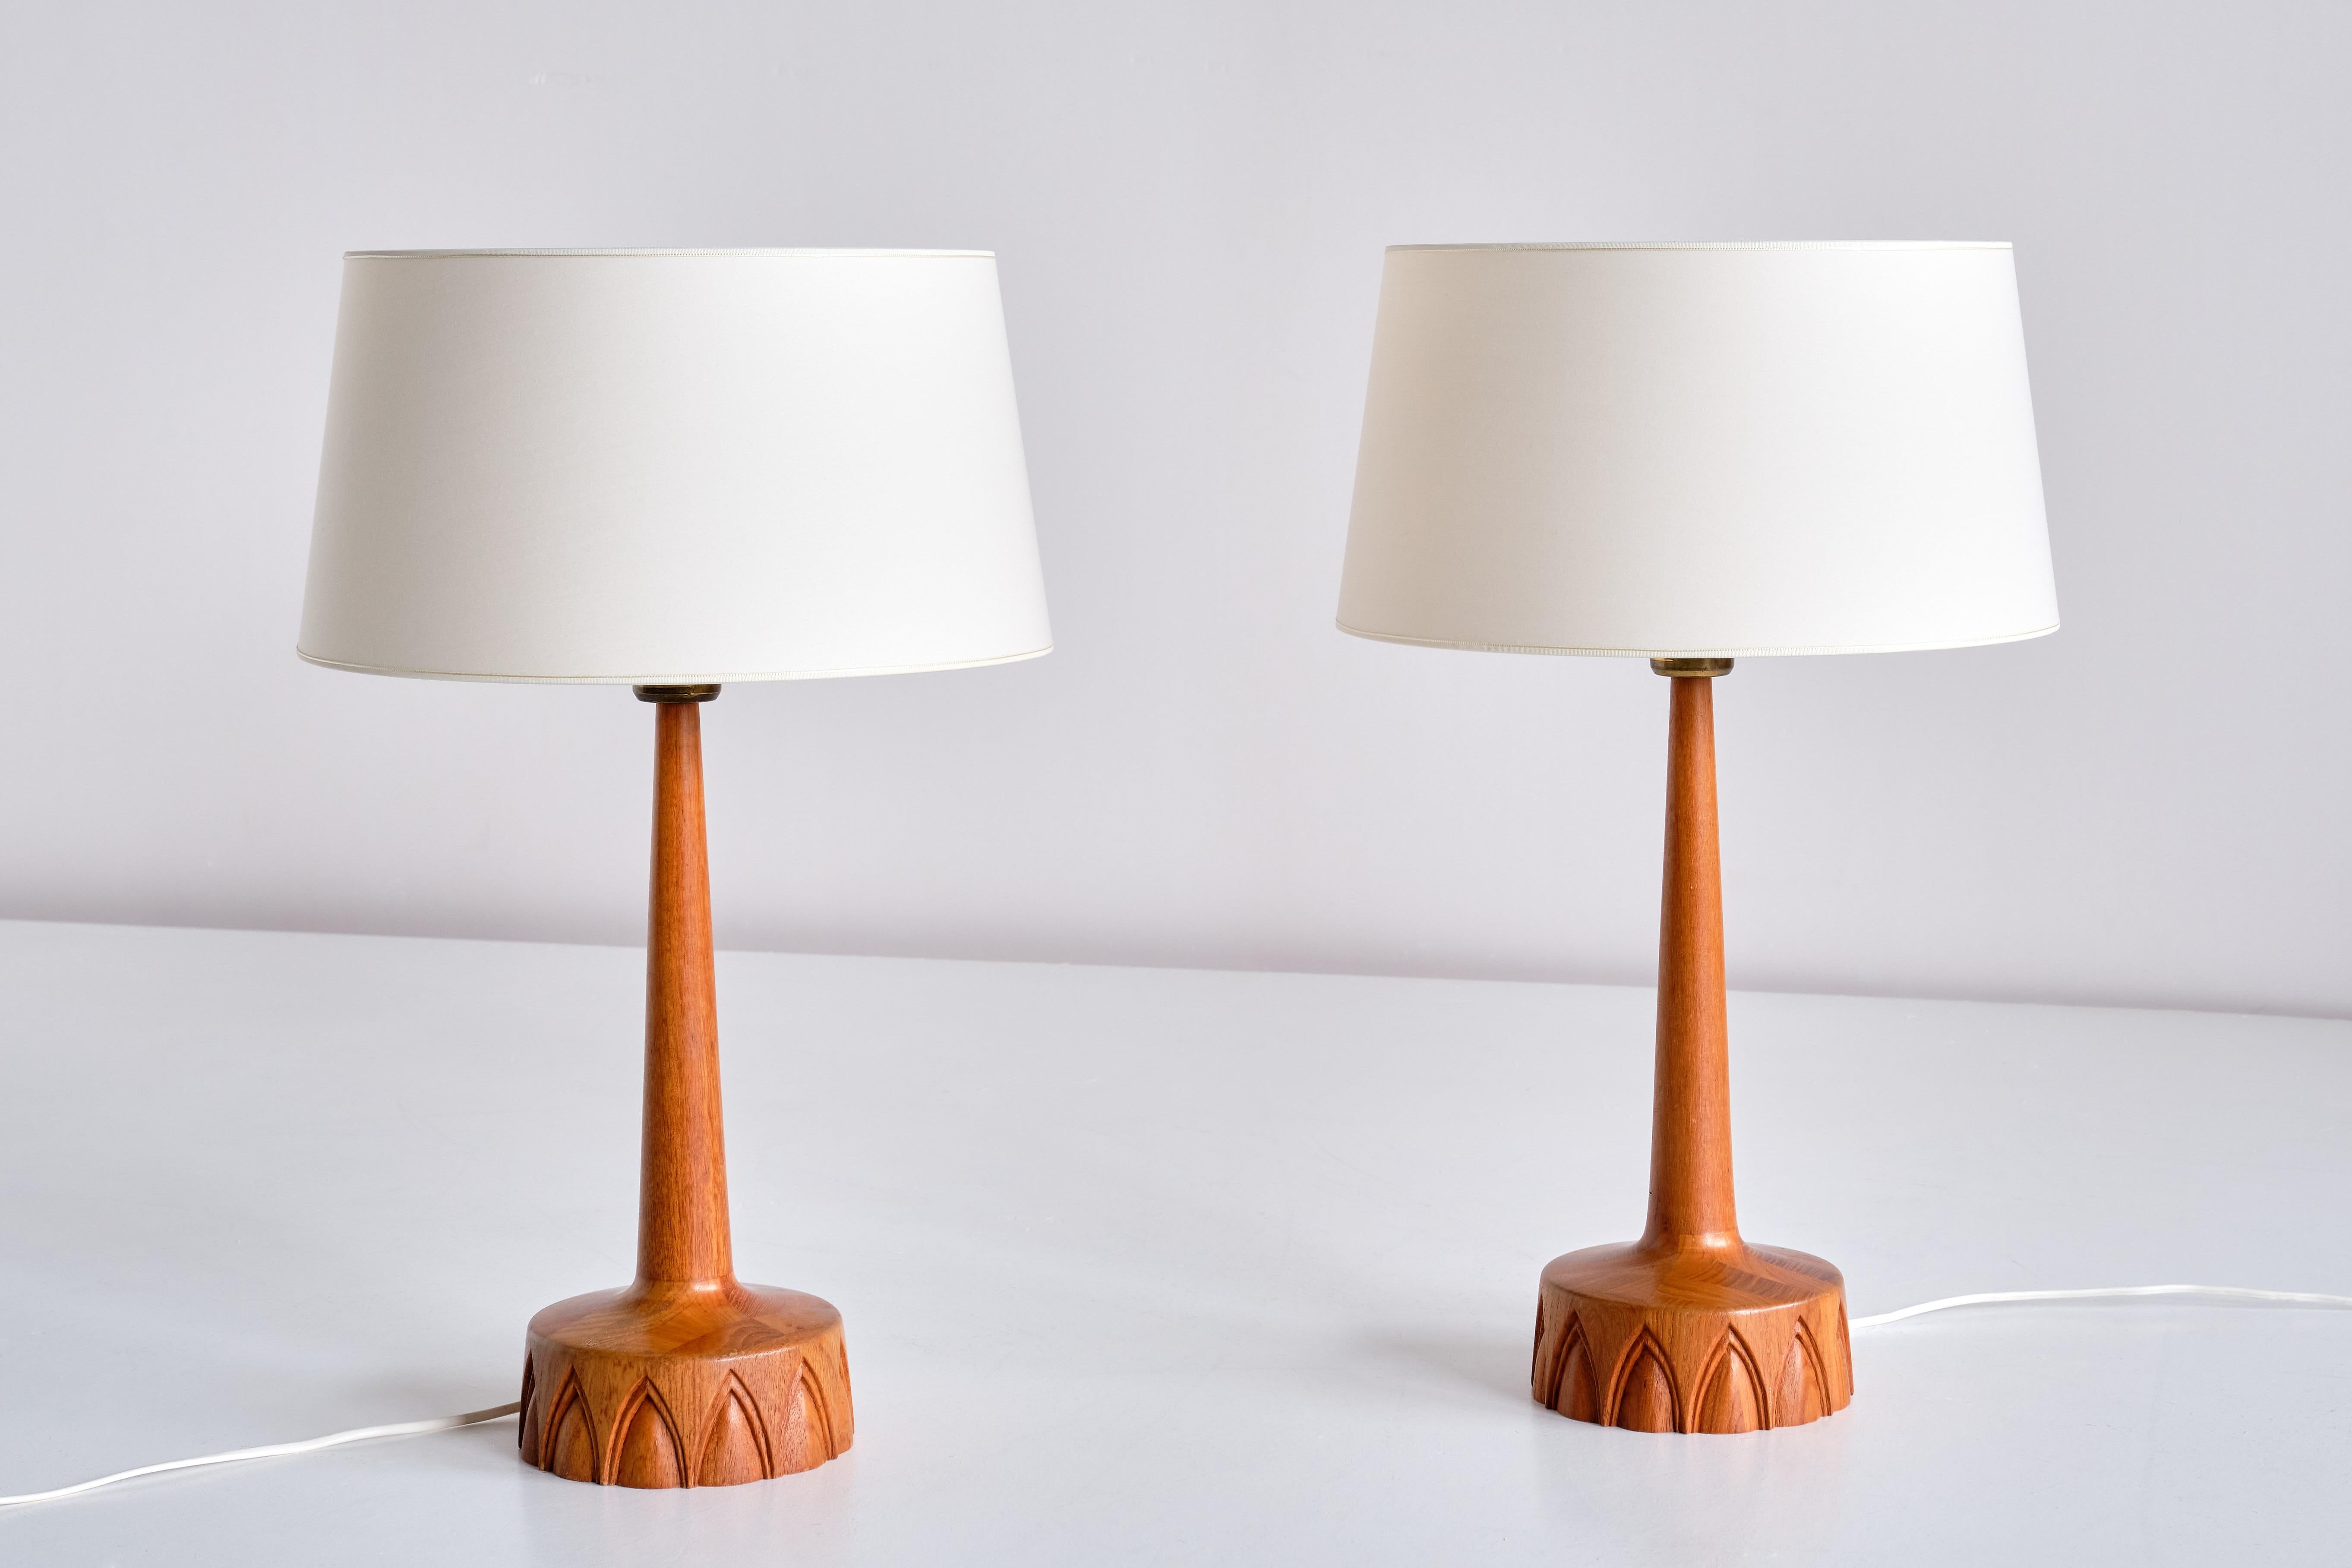 Cette élégante paire de lampes de table a été produite par AB Stilarmatur Tranås en Suède dans les années 1960. Fabriquées en bois de teck, les bases circulaires présentent un intéressant motif arqué sculpté à la main. L'interrupteur de la lumière